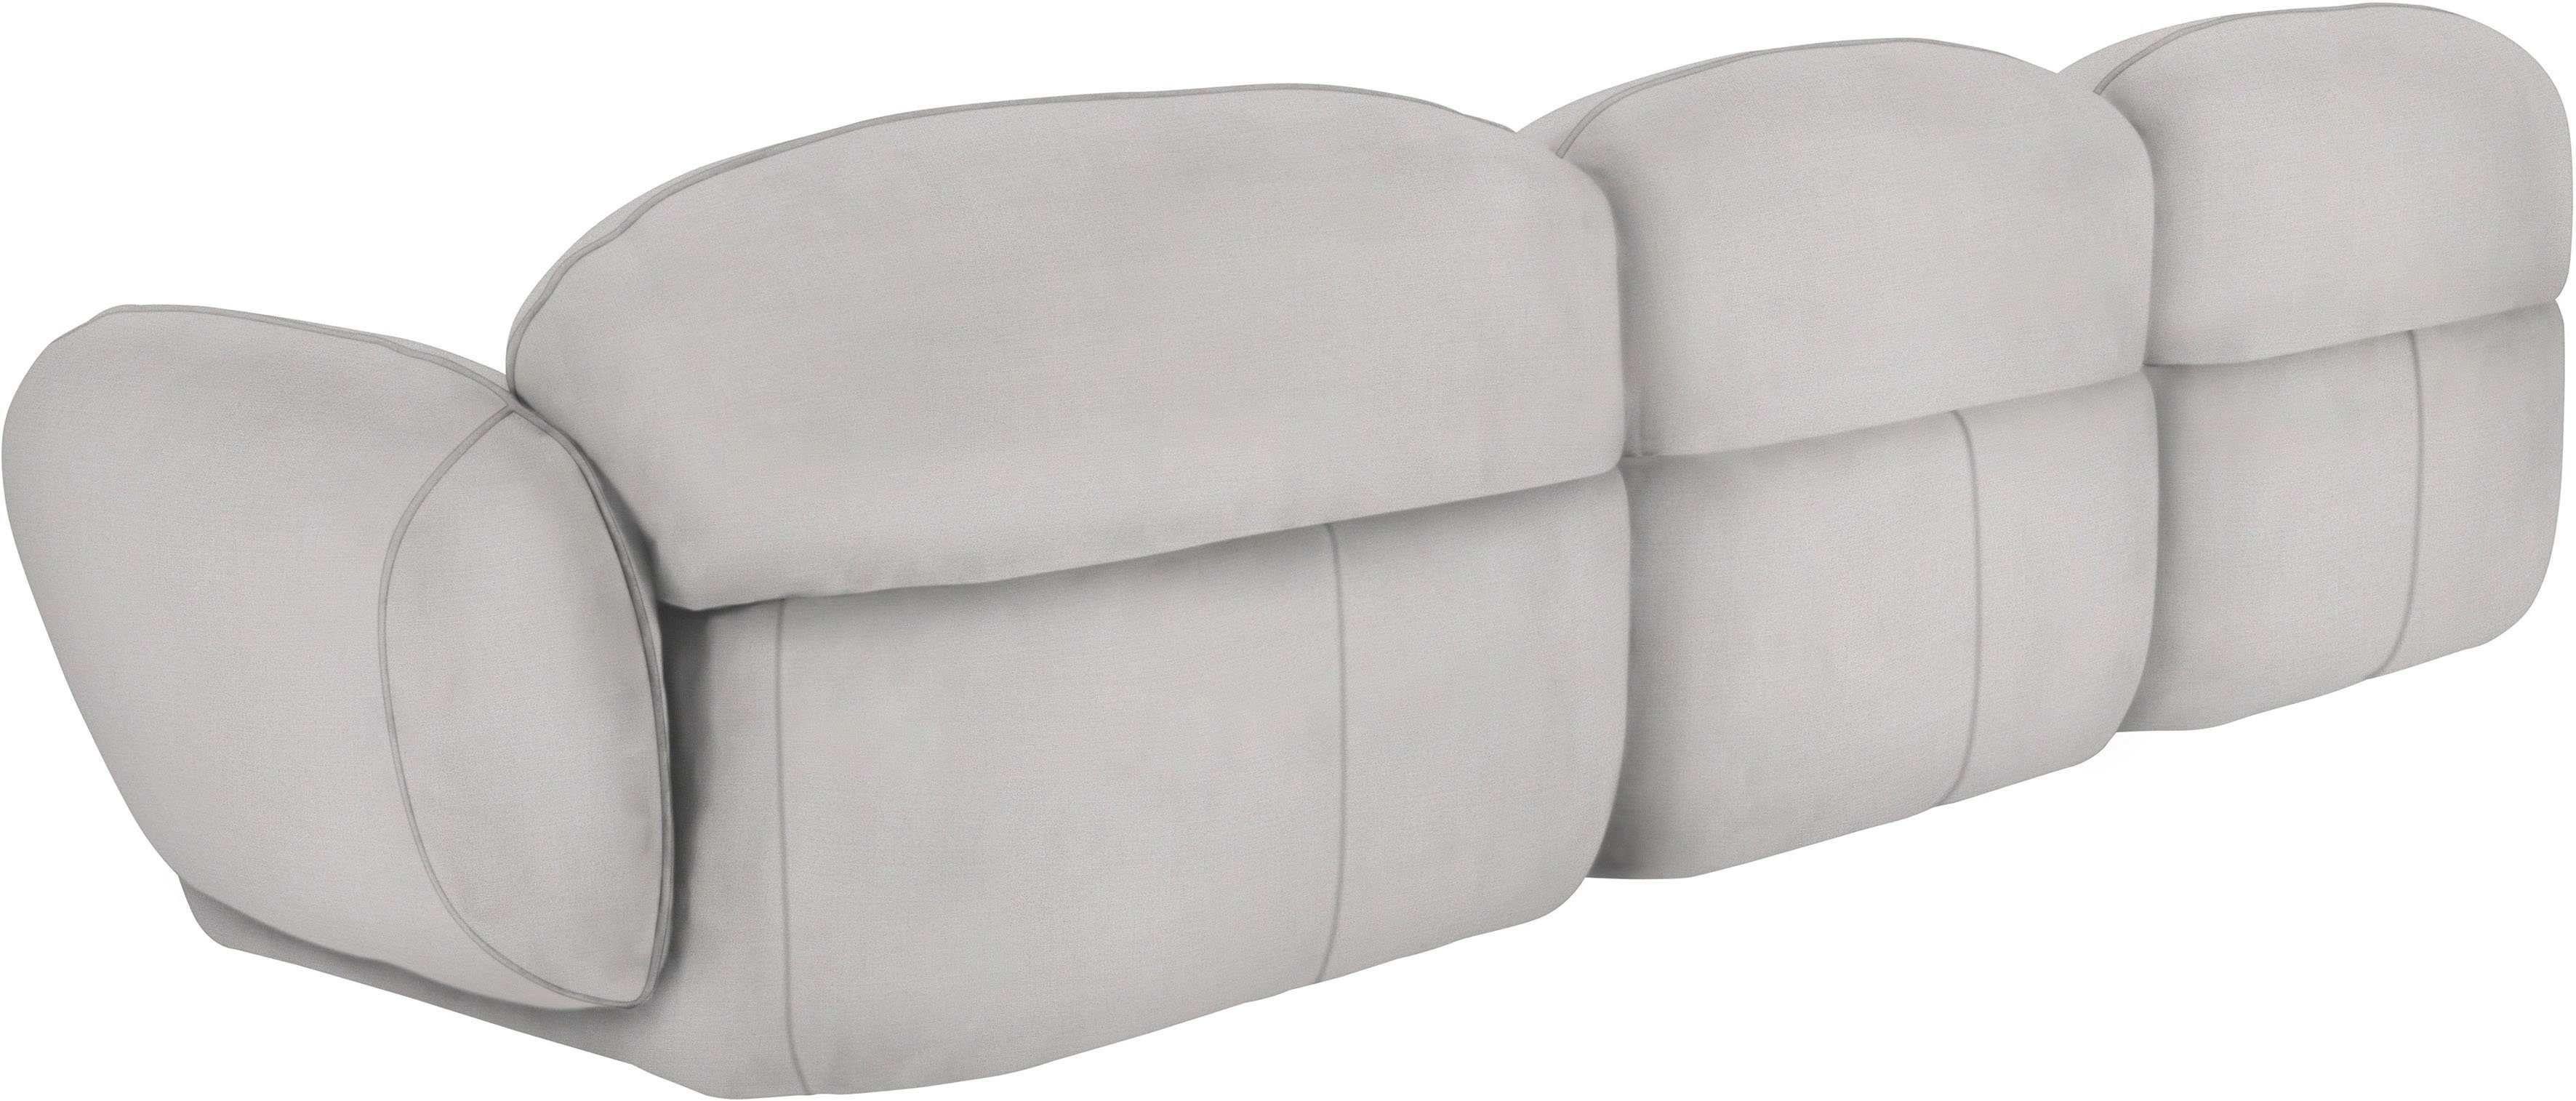 Design Memoryschaum, furninova skandinavischen komfortabel Bubble, 3,5-Sitzer im durch